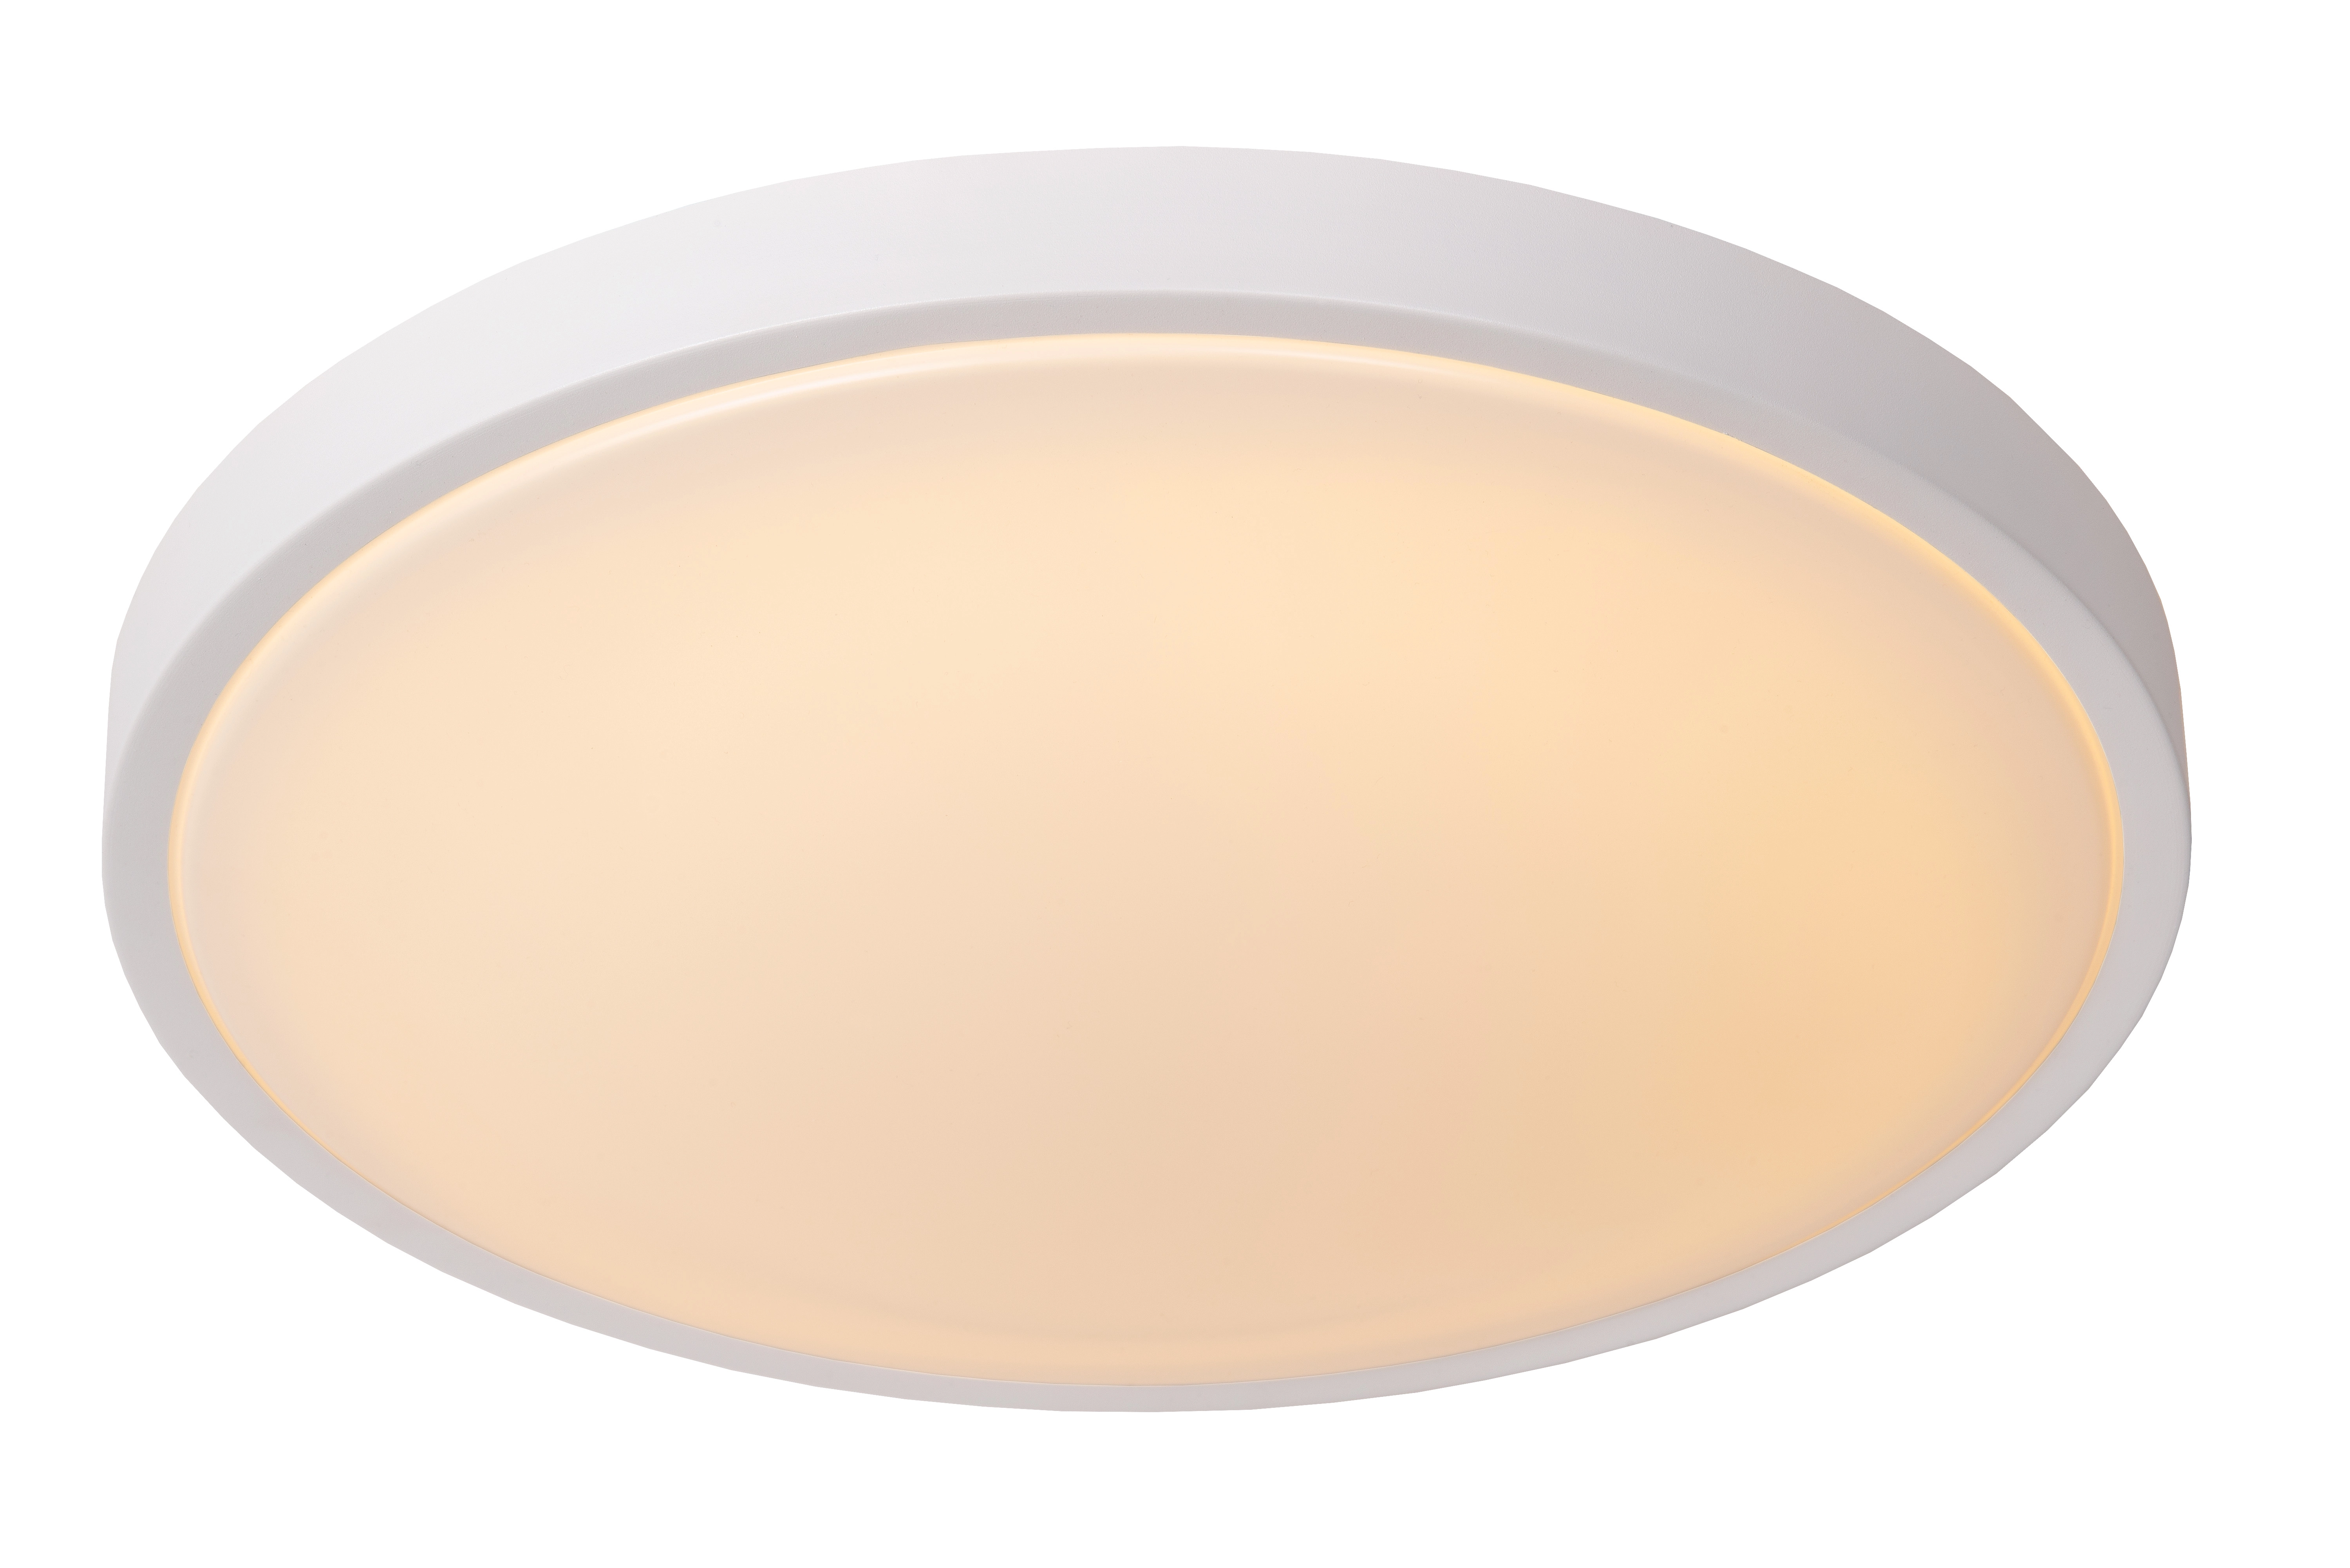 LU 79110/40/31 Lucide DASHER - Flush ceiling light Bathroom - Ø 41 cm - LED - 1x24W 2700K - IP44 - B